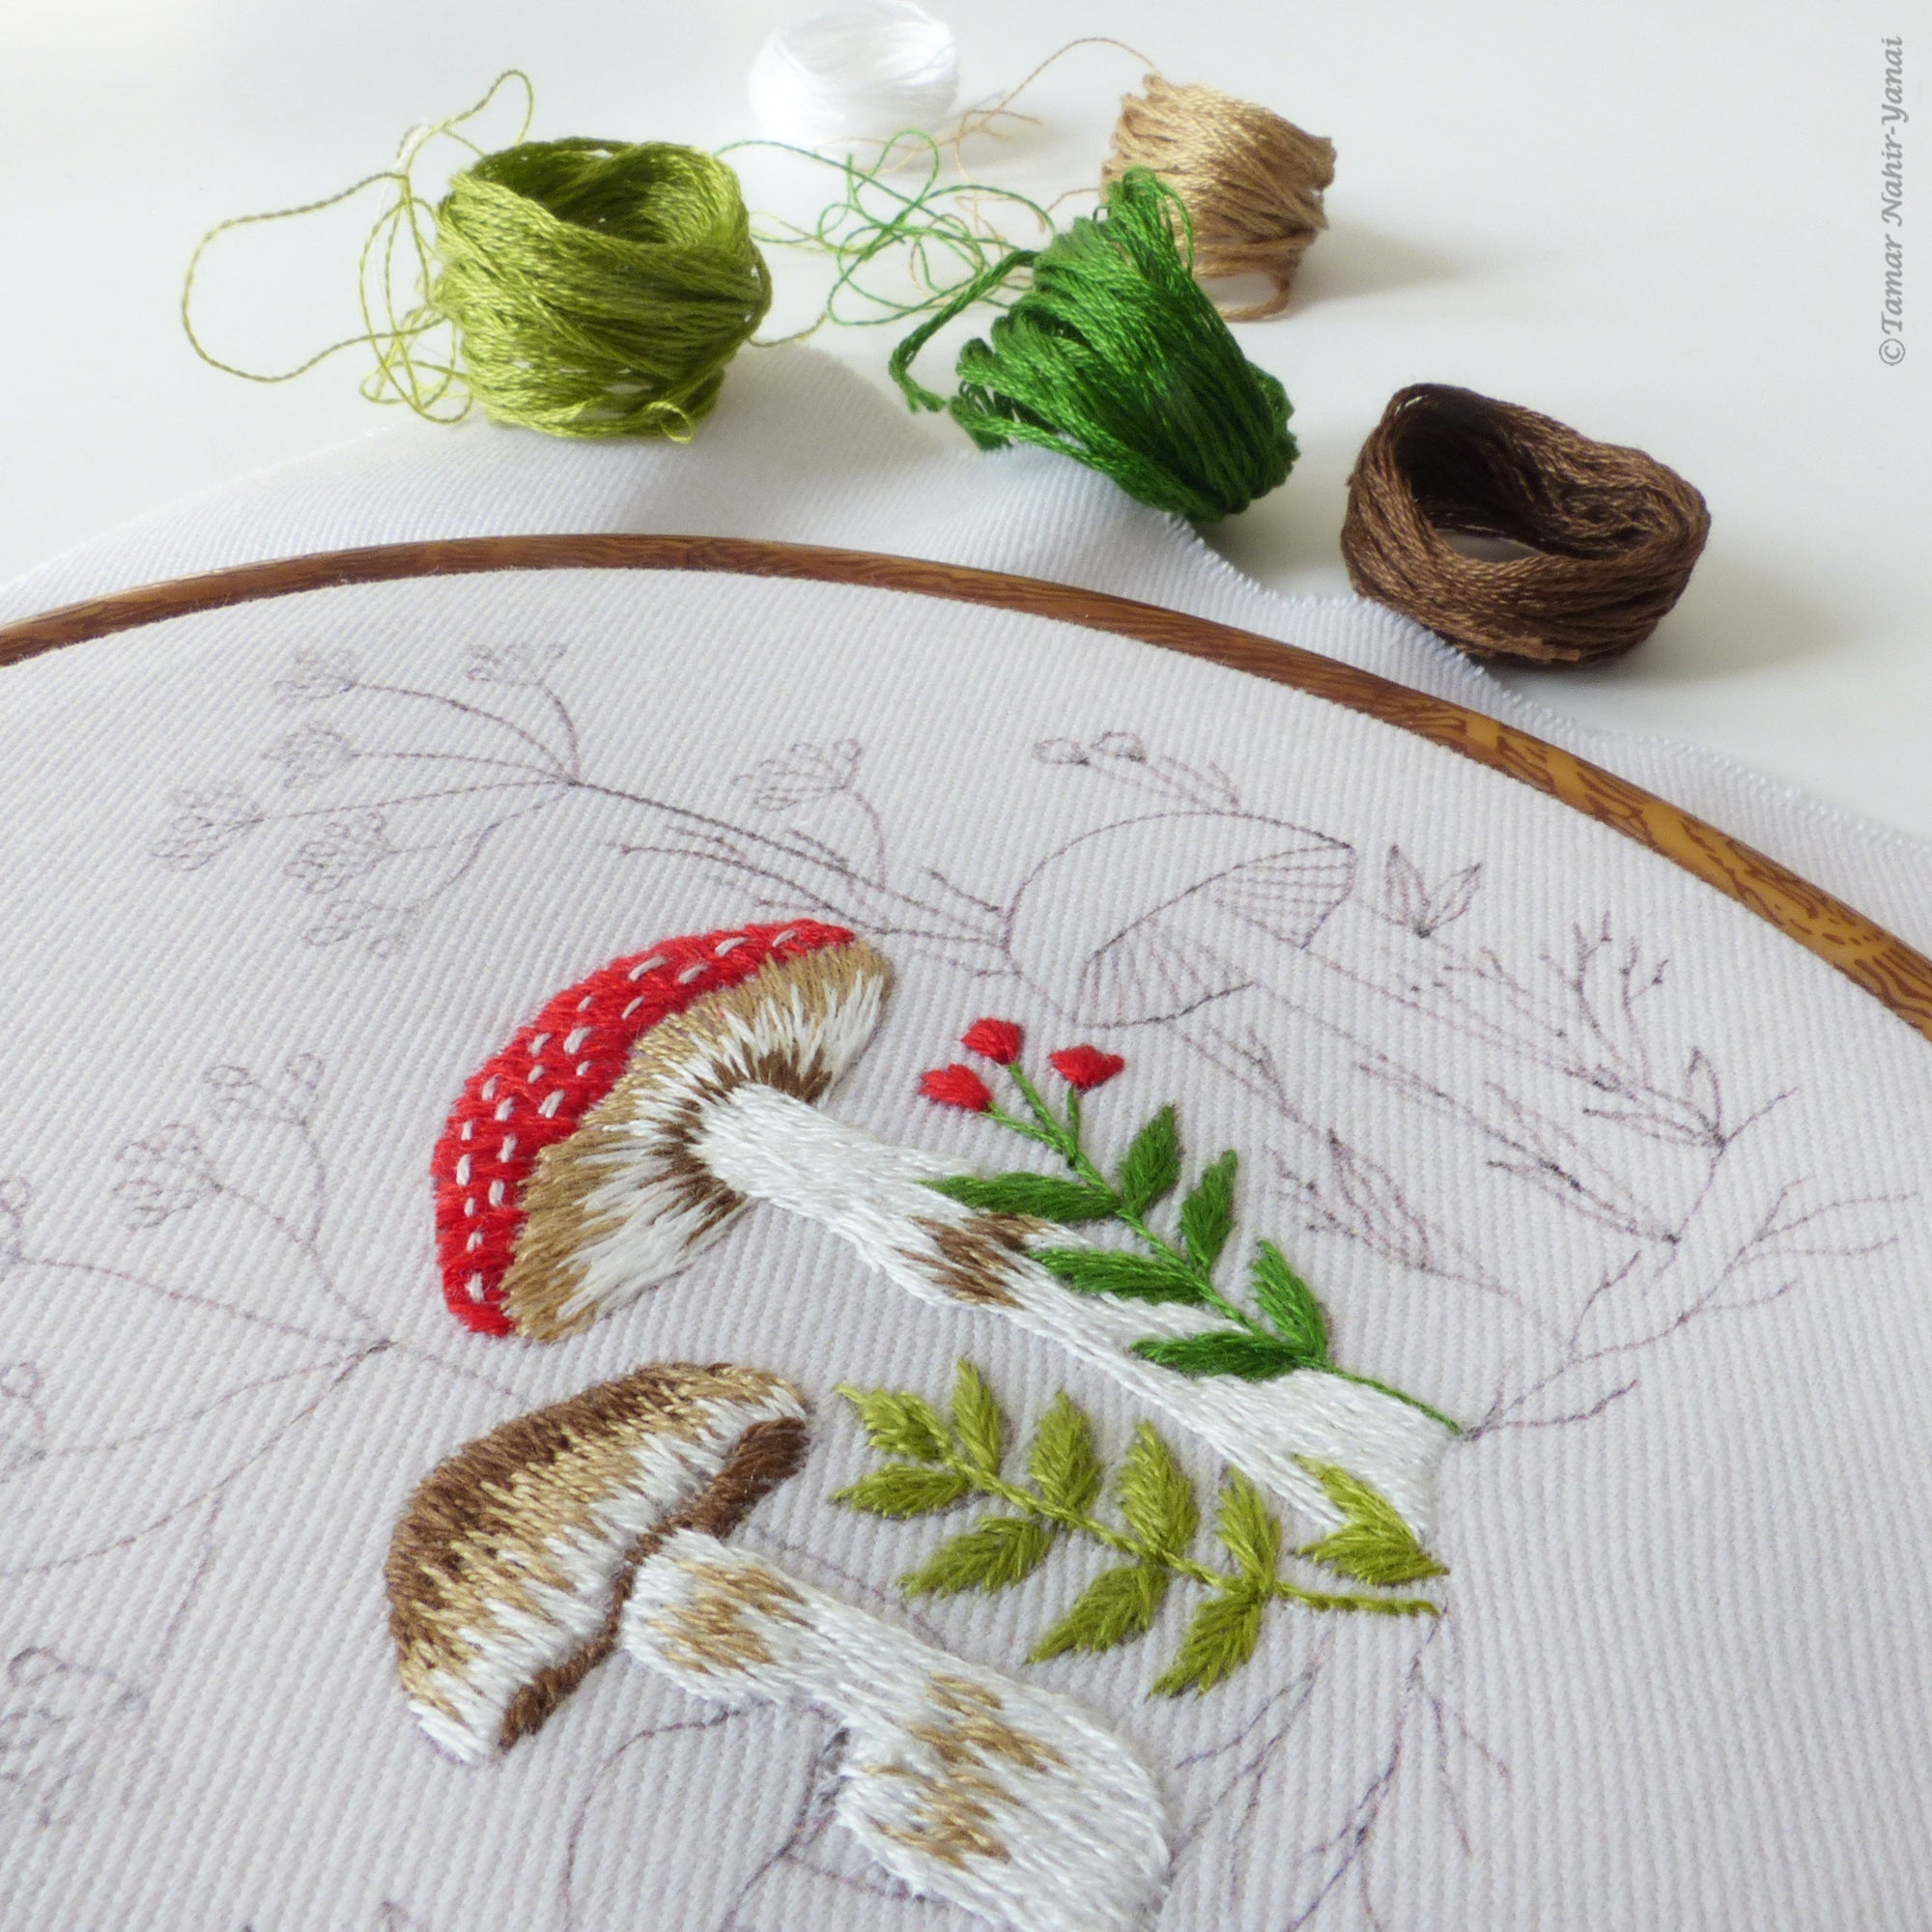 Mushrooms Embroidery Kit